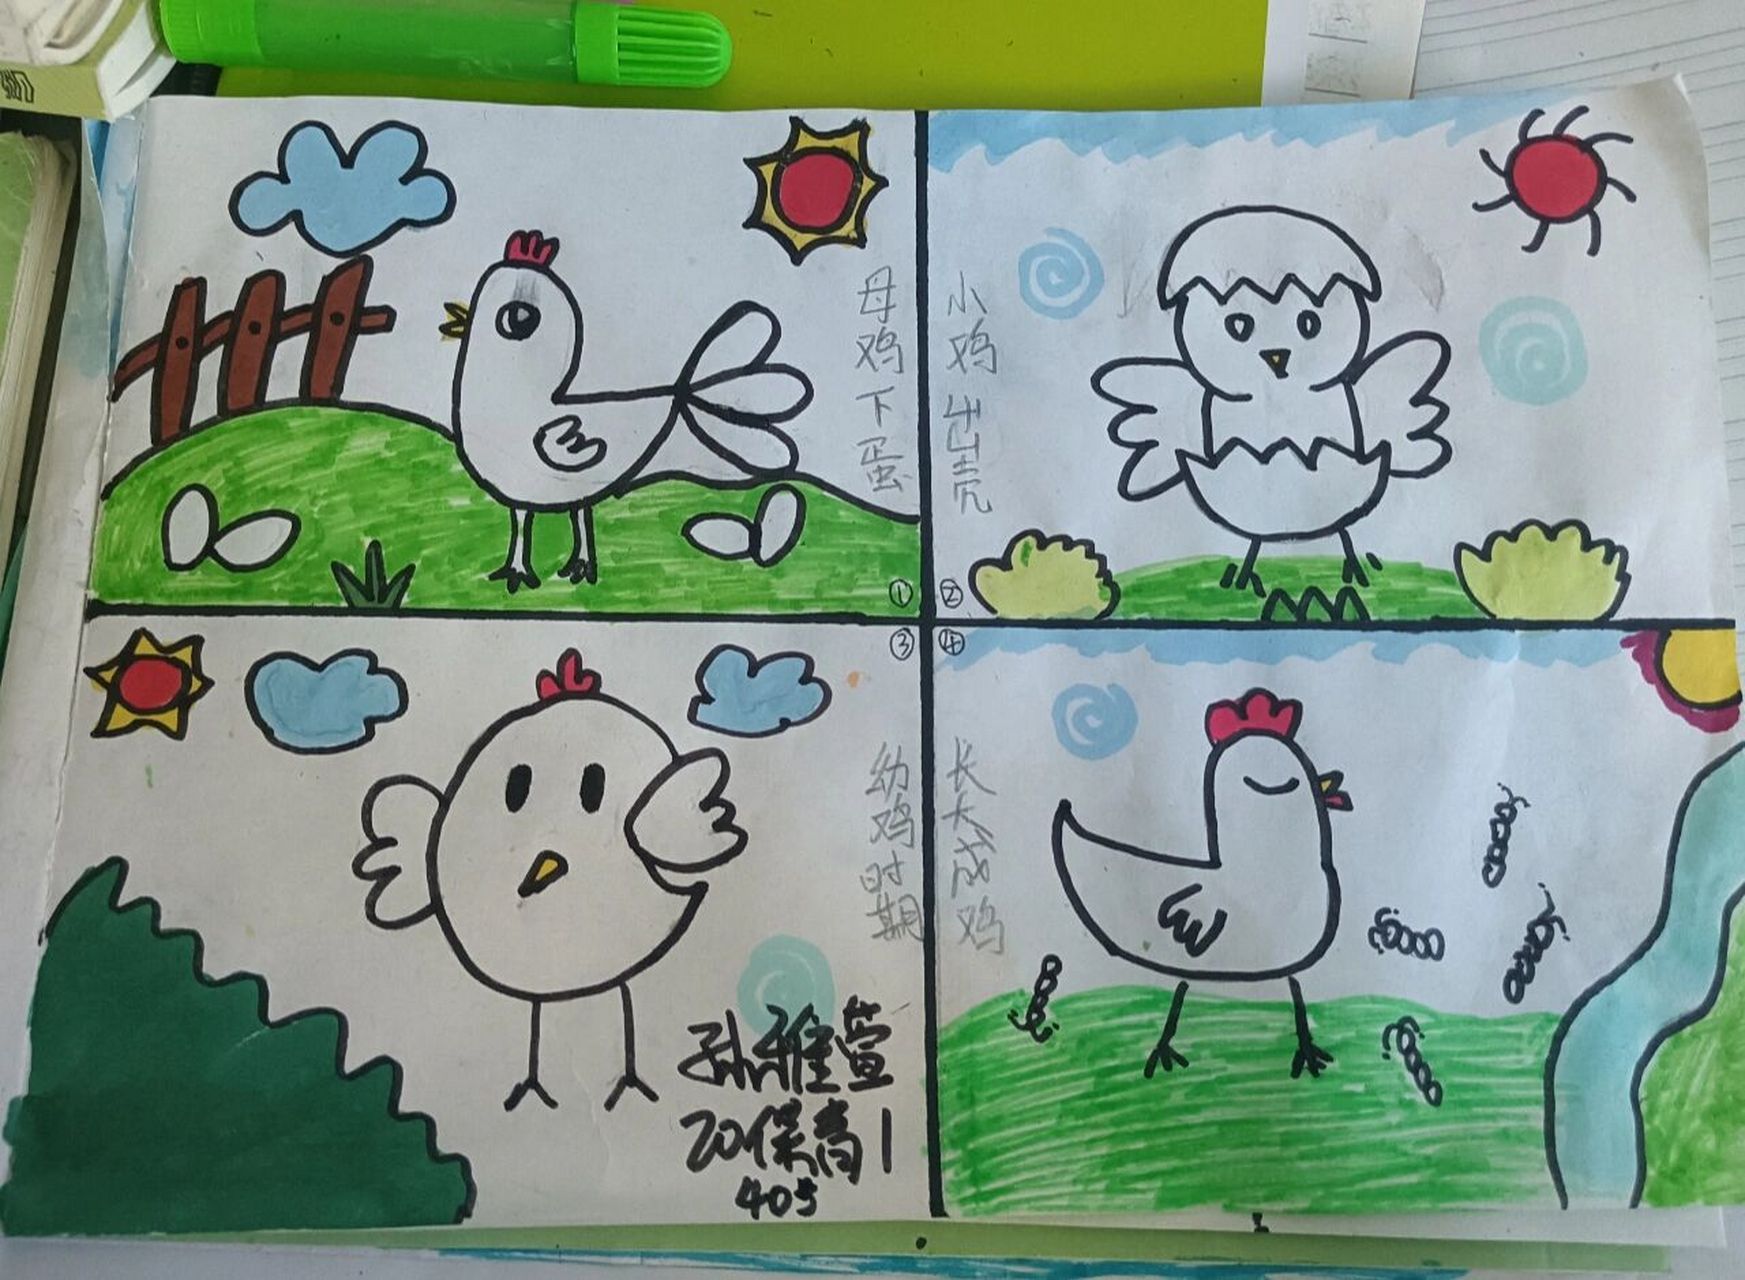 鸡的成长过程简笔画图片